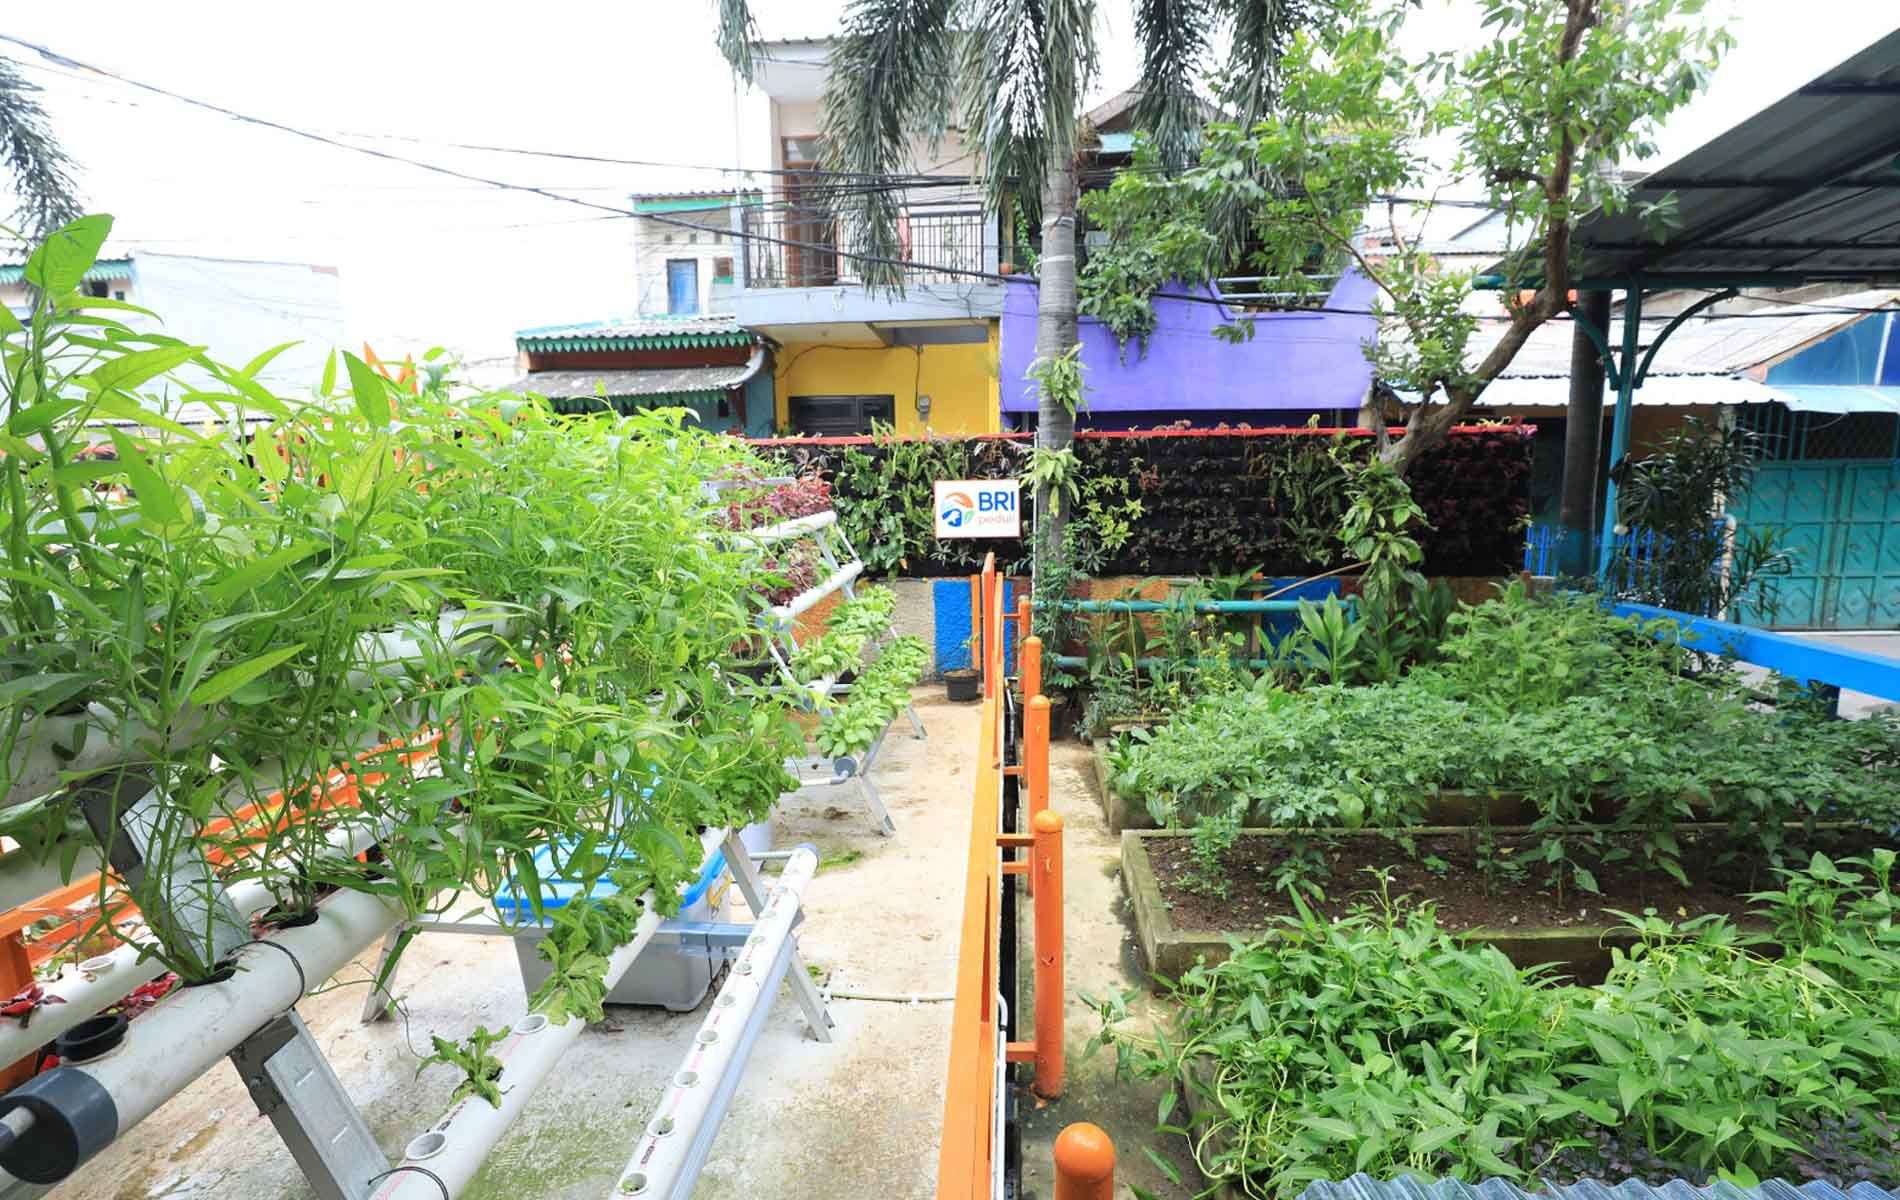 Nuansa Hijau di Kampung Palm Eco Green Village Malang, yang Makin Asri Berkat Program BRInita